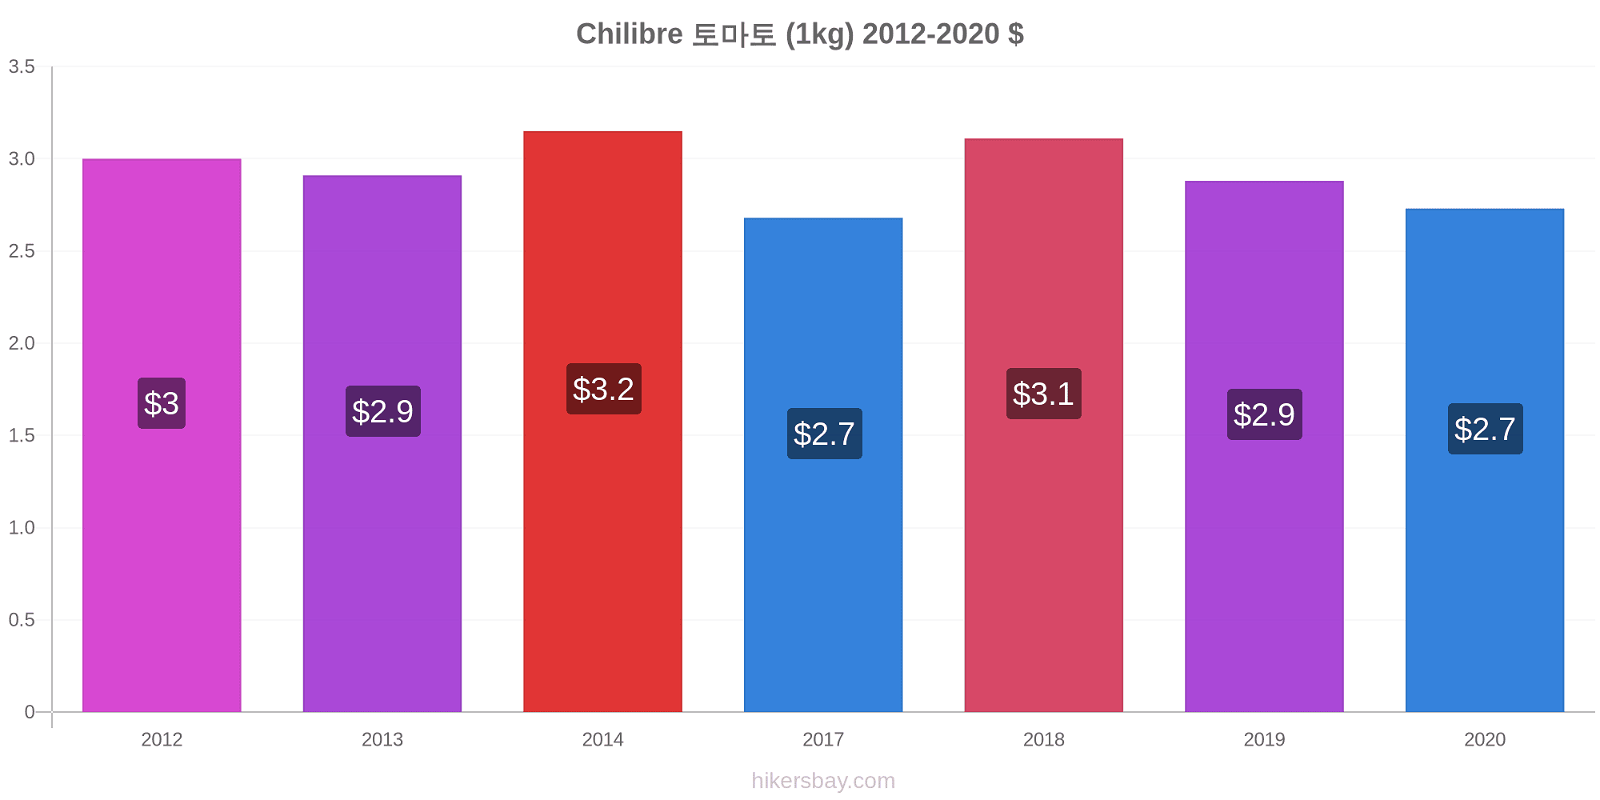 Chilibre 가격 변경 토마토 (1kg) hikersbay.com